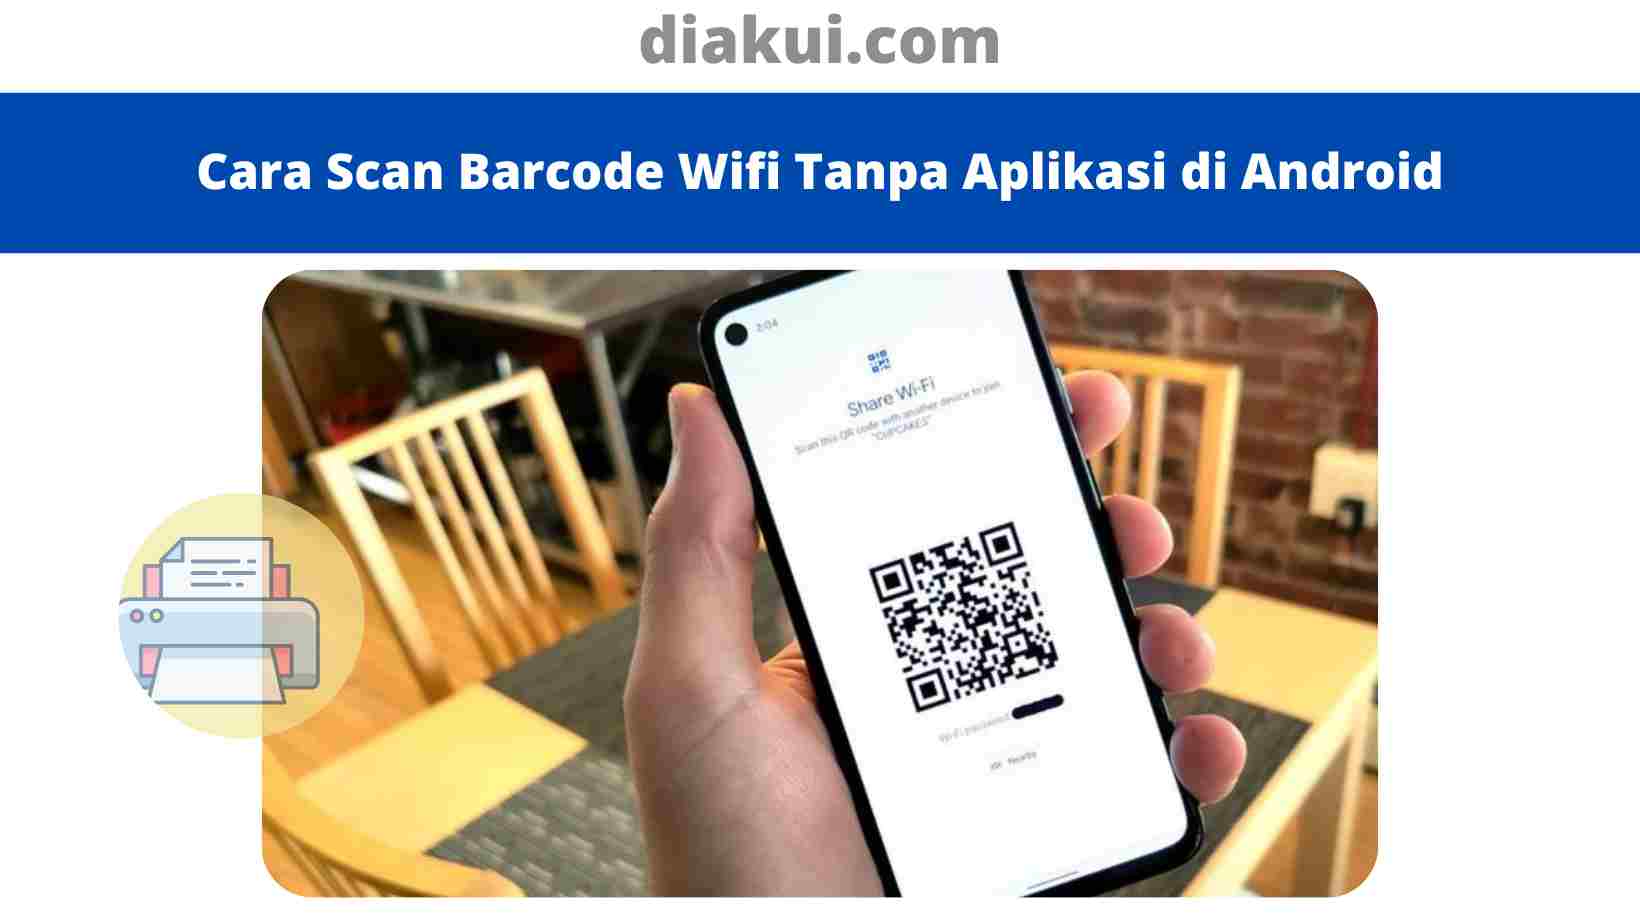 Cara Scan Barcode Wifi Tanpa Aplikasi di Android